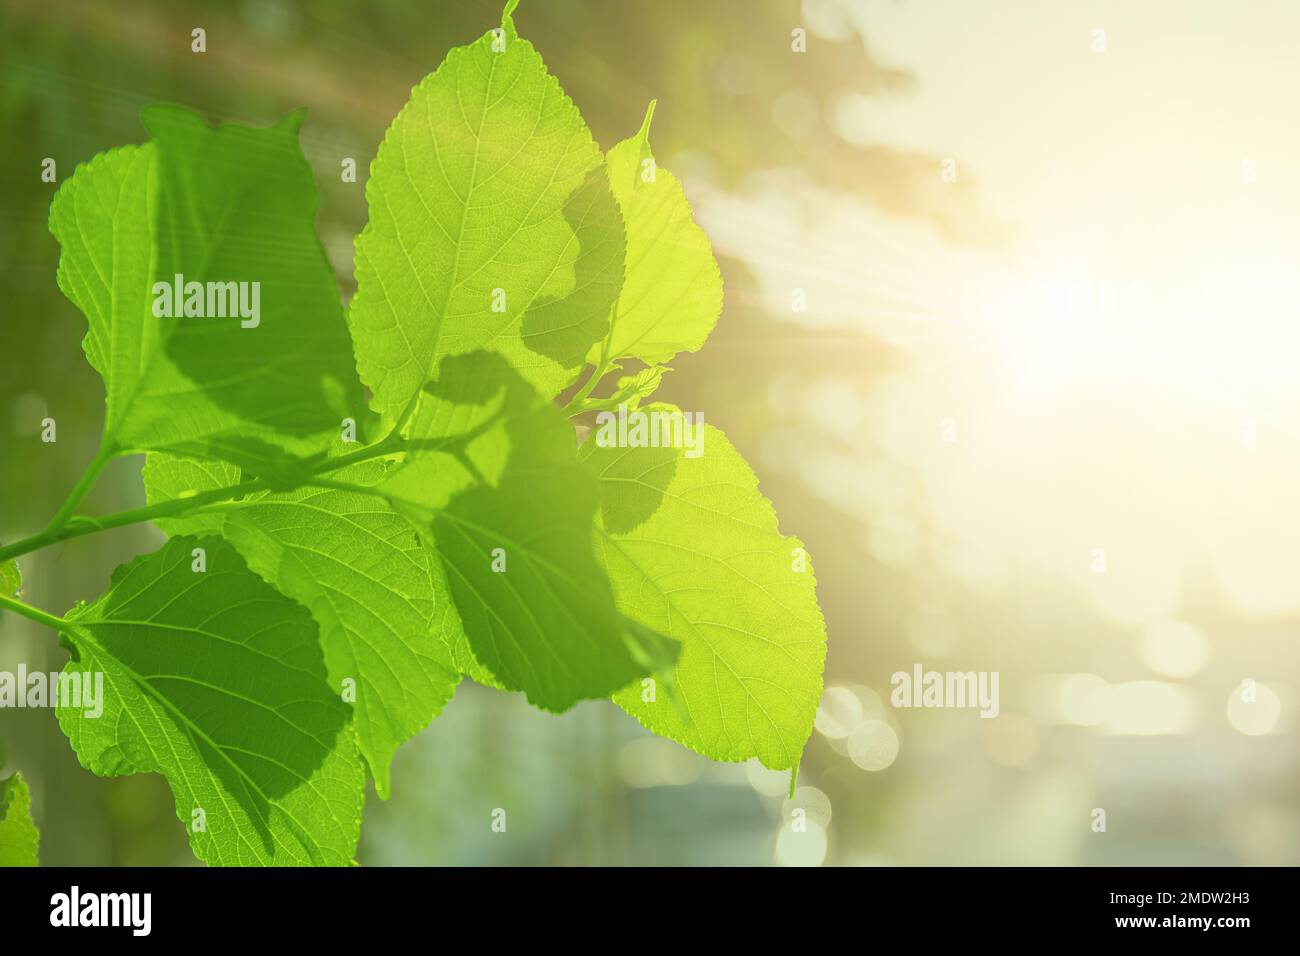 Feuilles vertes feuille d'arbre contre lumière du soleil pour l'oxygène dioxyde de carbone absorbé dans le processus de photosynthèse Banque D'Images